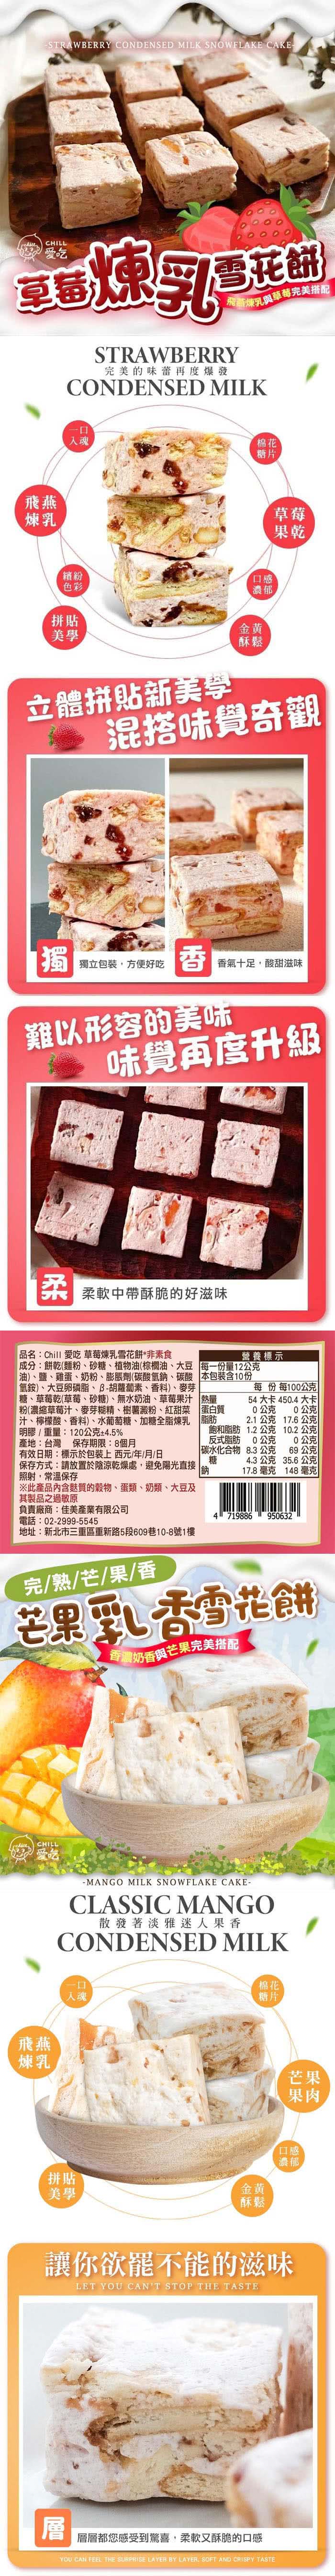 CHILL愛吃 繽紛水果雪花餅x3盒(120g/盒-草莓/芒